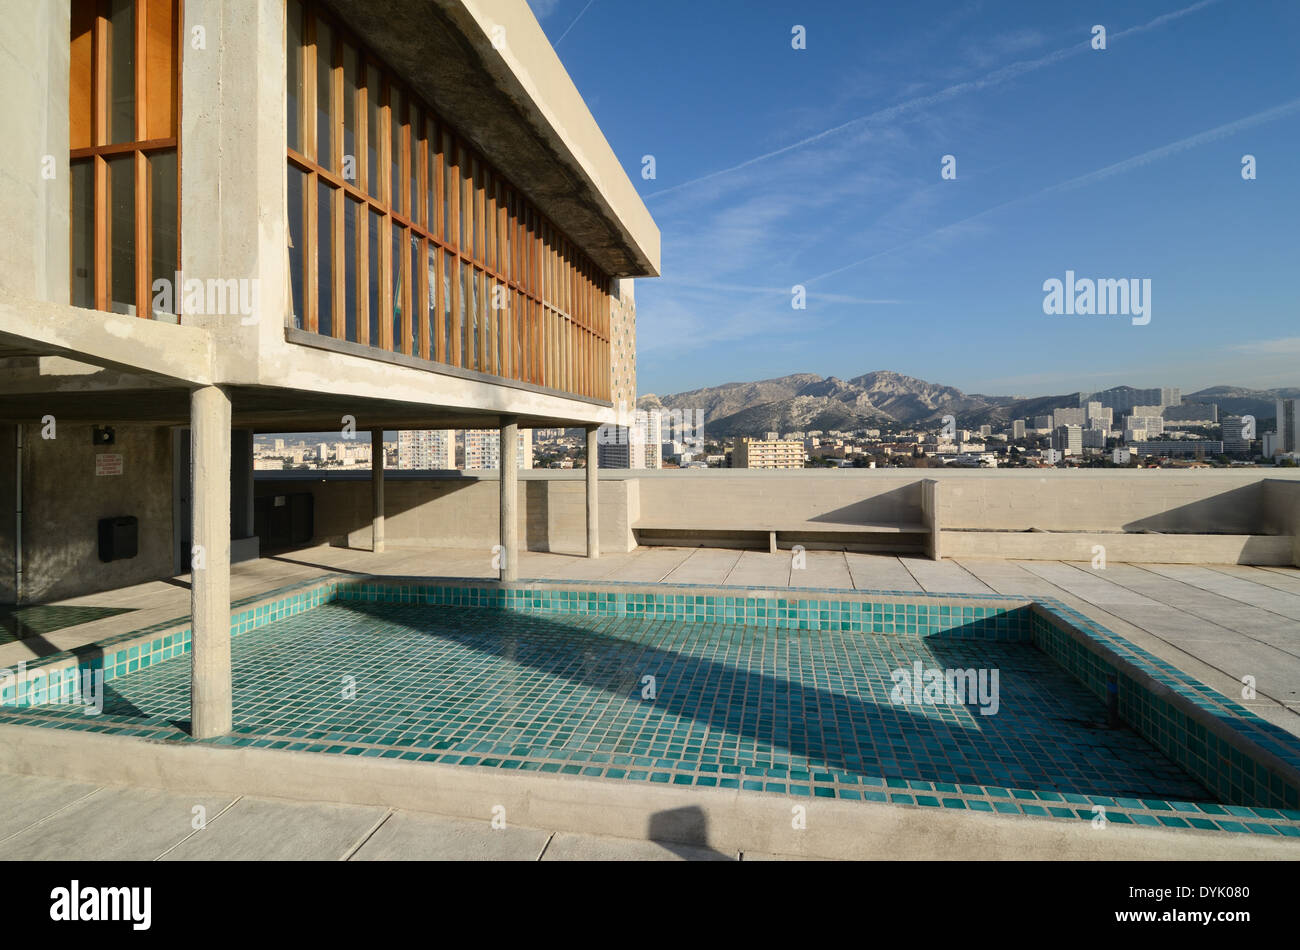 Toit-terrasse & piscine de la Cité Radieuse ou unité d'habitation Le Corbusier Marseille ou Marseille France Banque D'Images